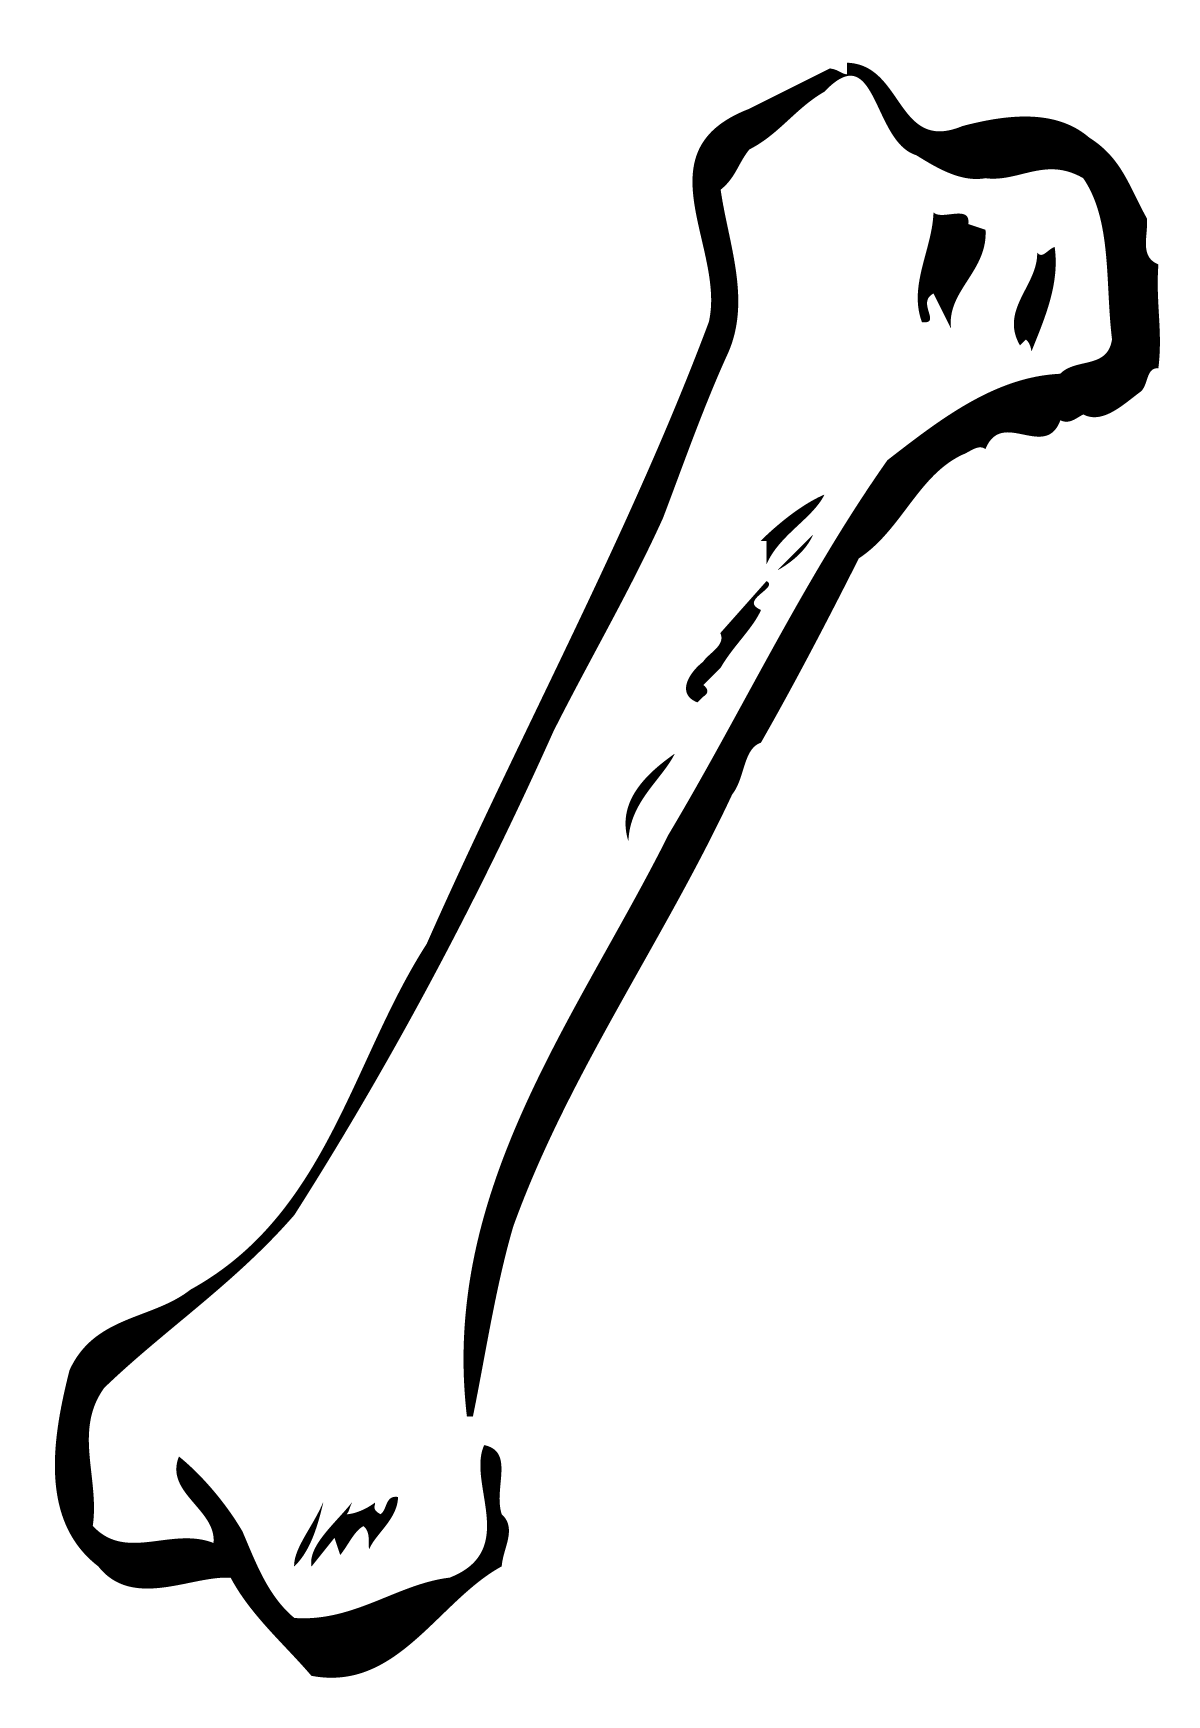 Bone Free PNG Image